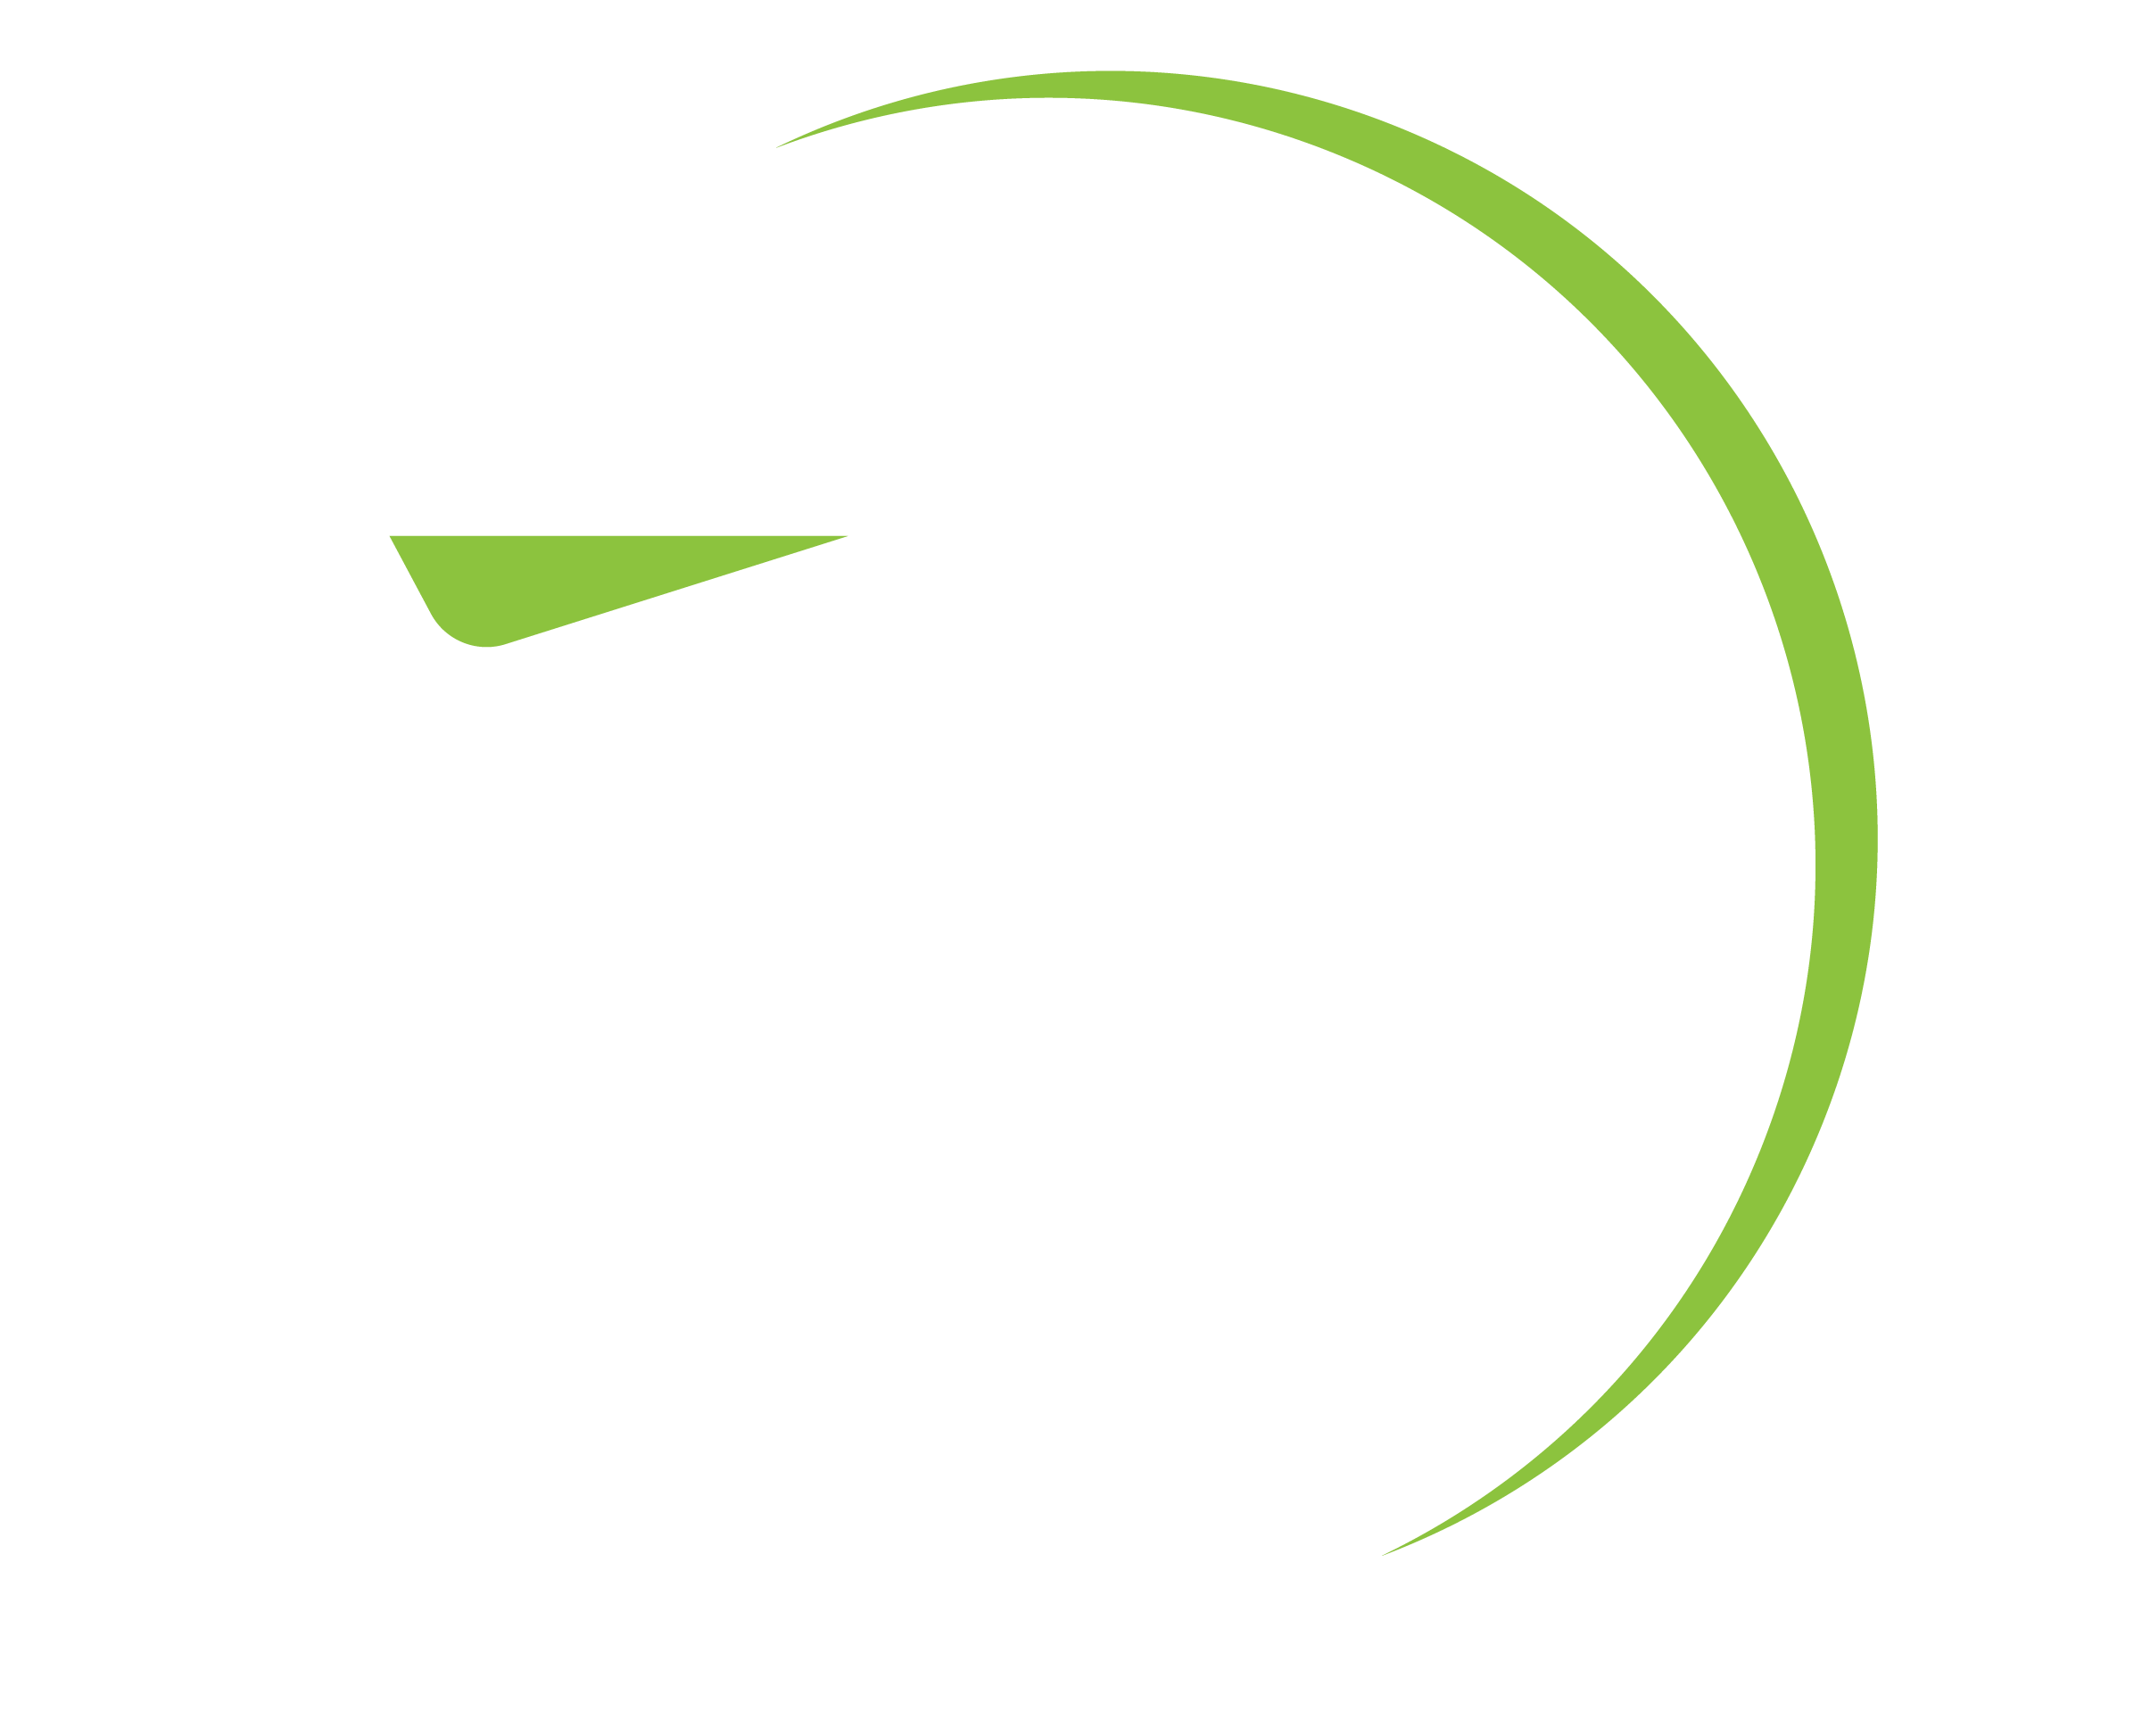 AIR CAR RENTAL KOŠICE - Member of the AIR GROUP